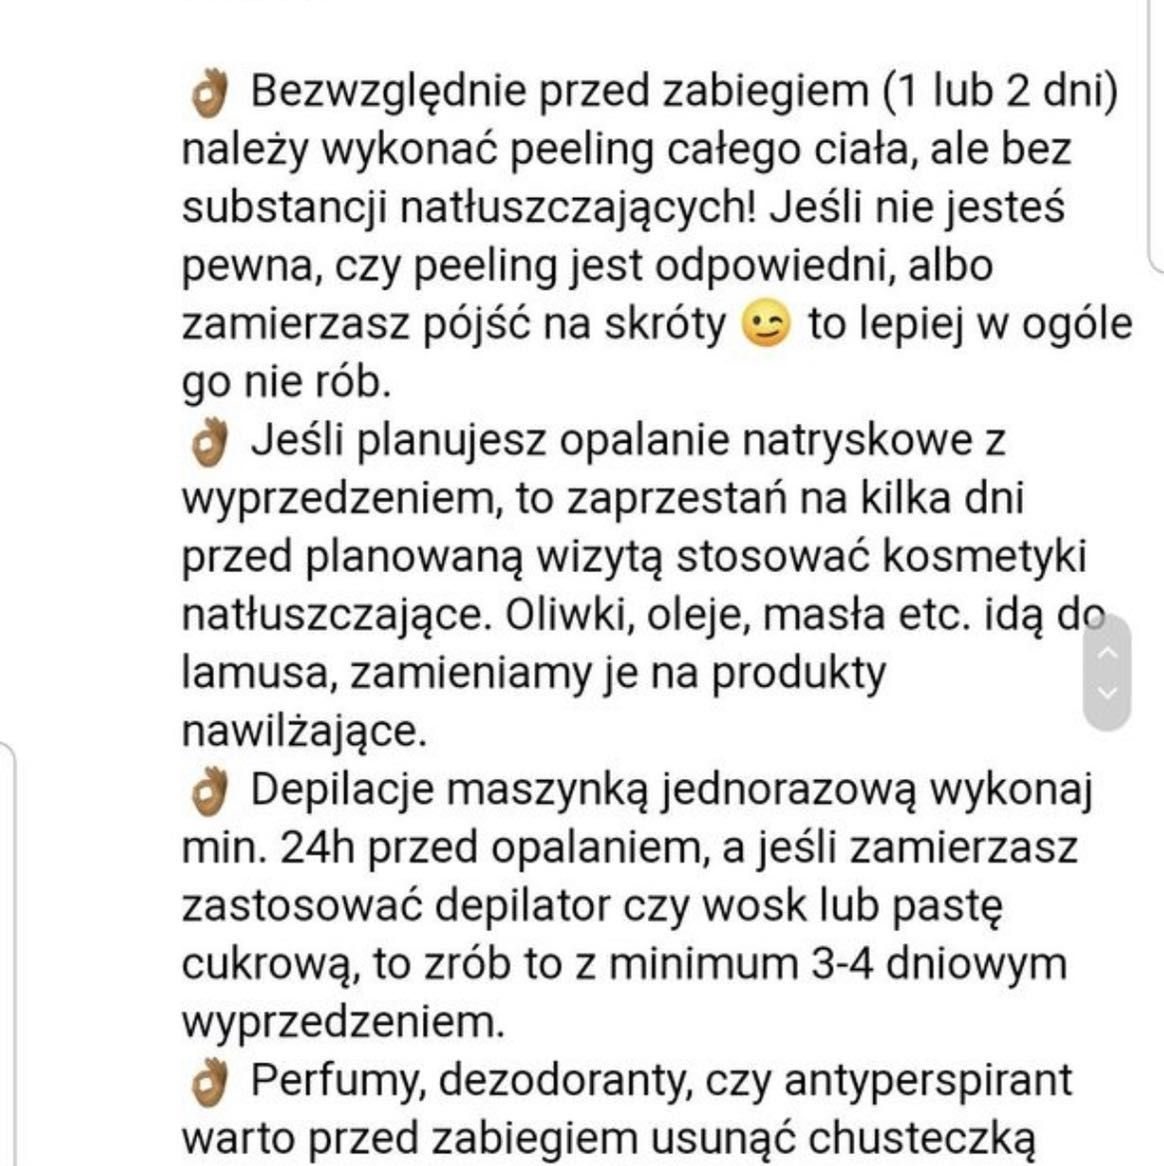 Portfolio usługi Opalanie natryskowe z dojazdem na terenie Warszawy